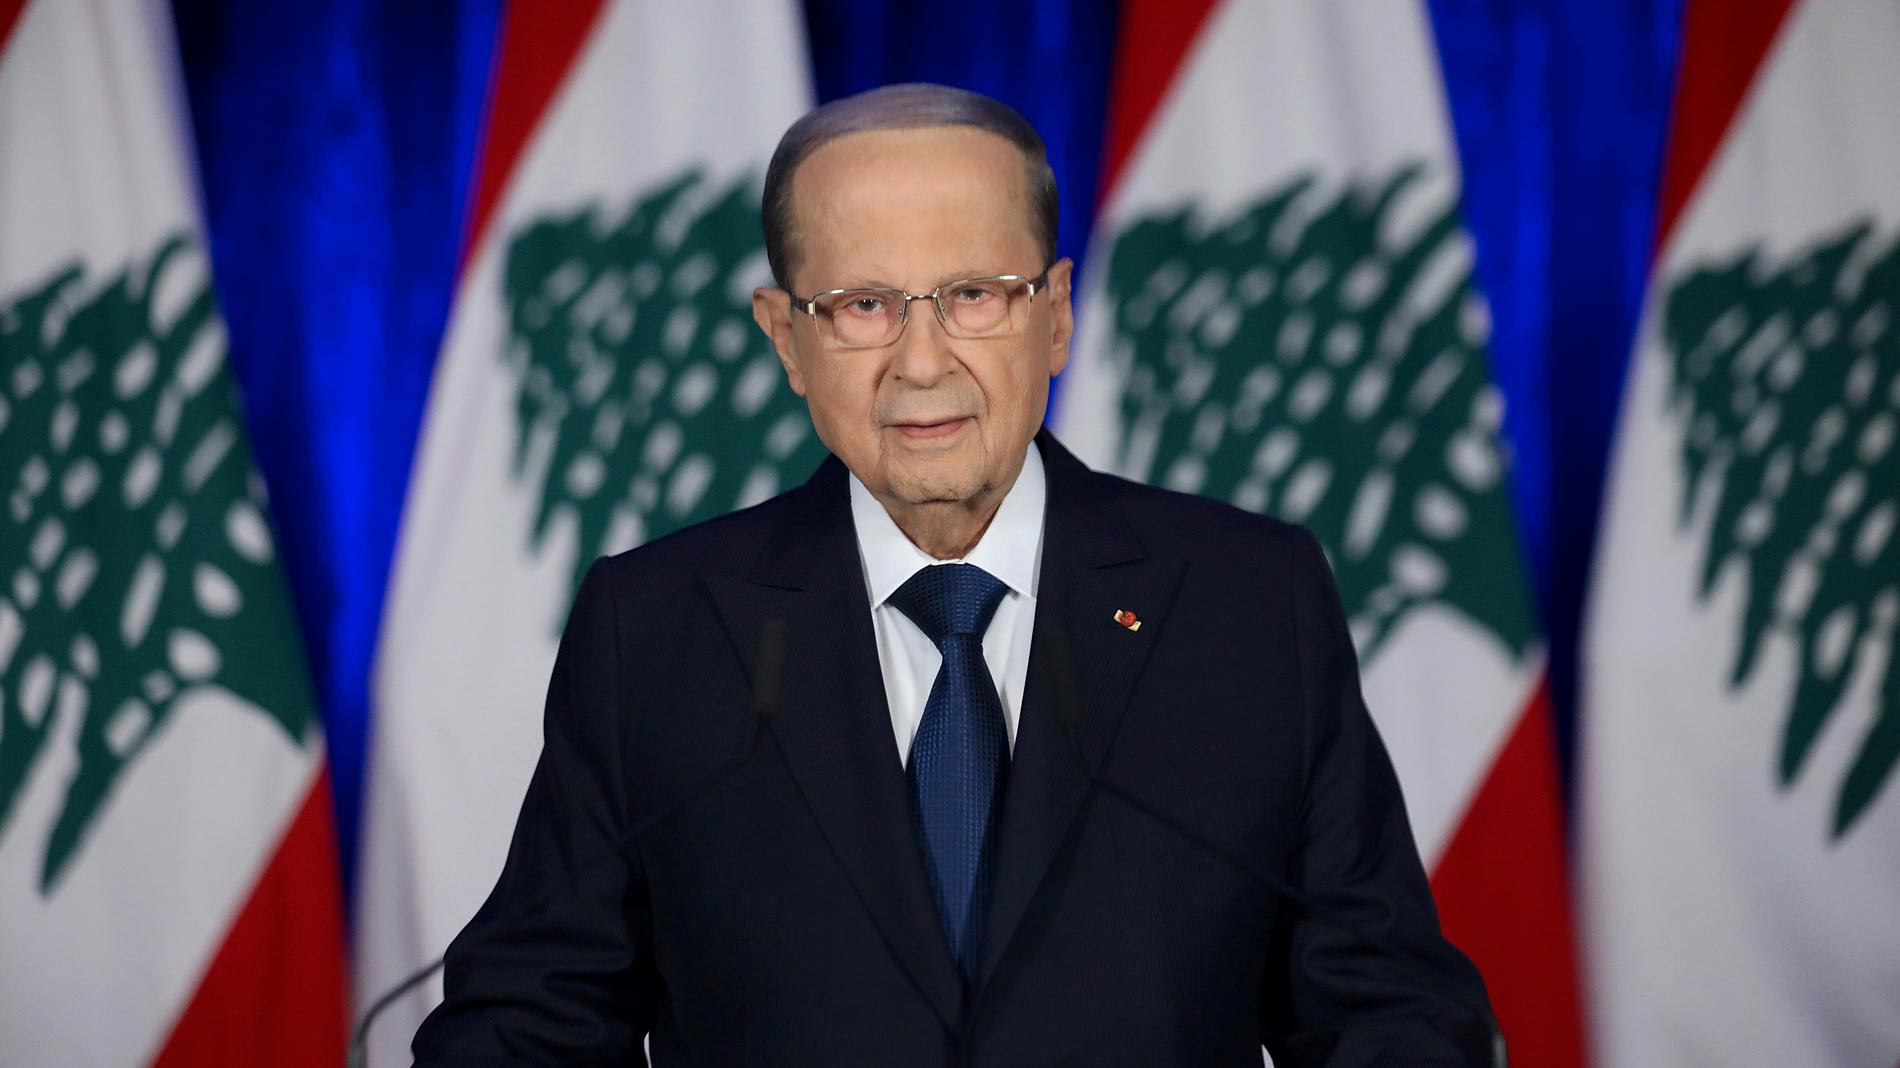 Libanons president Michel Aoun